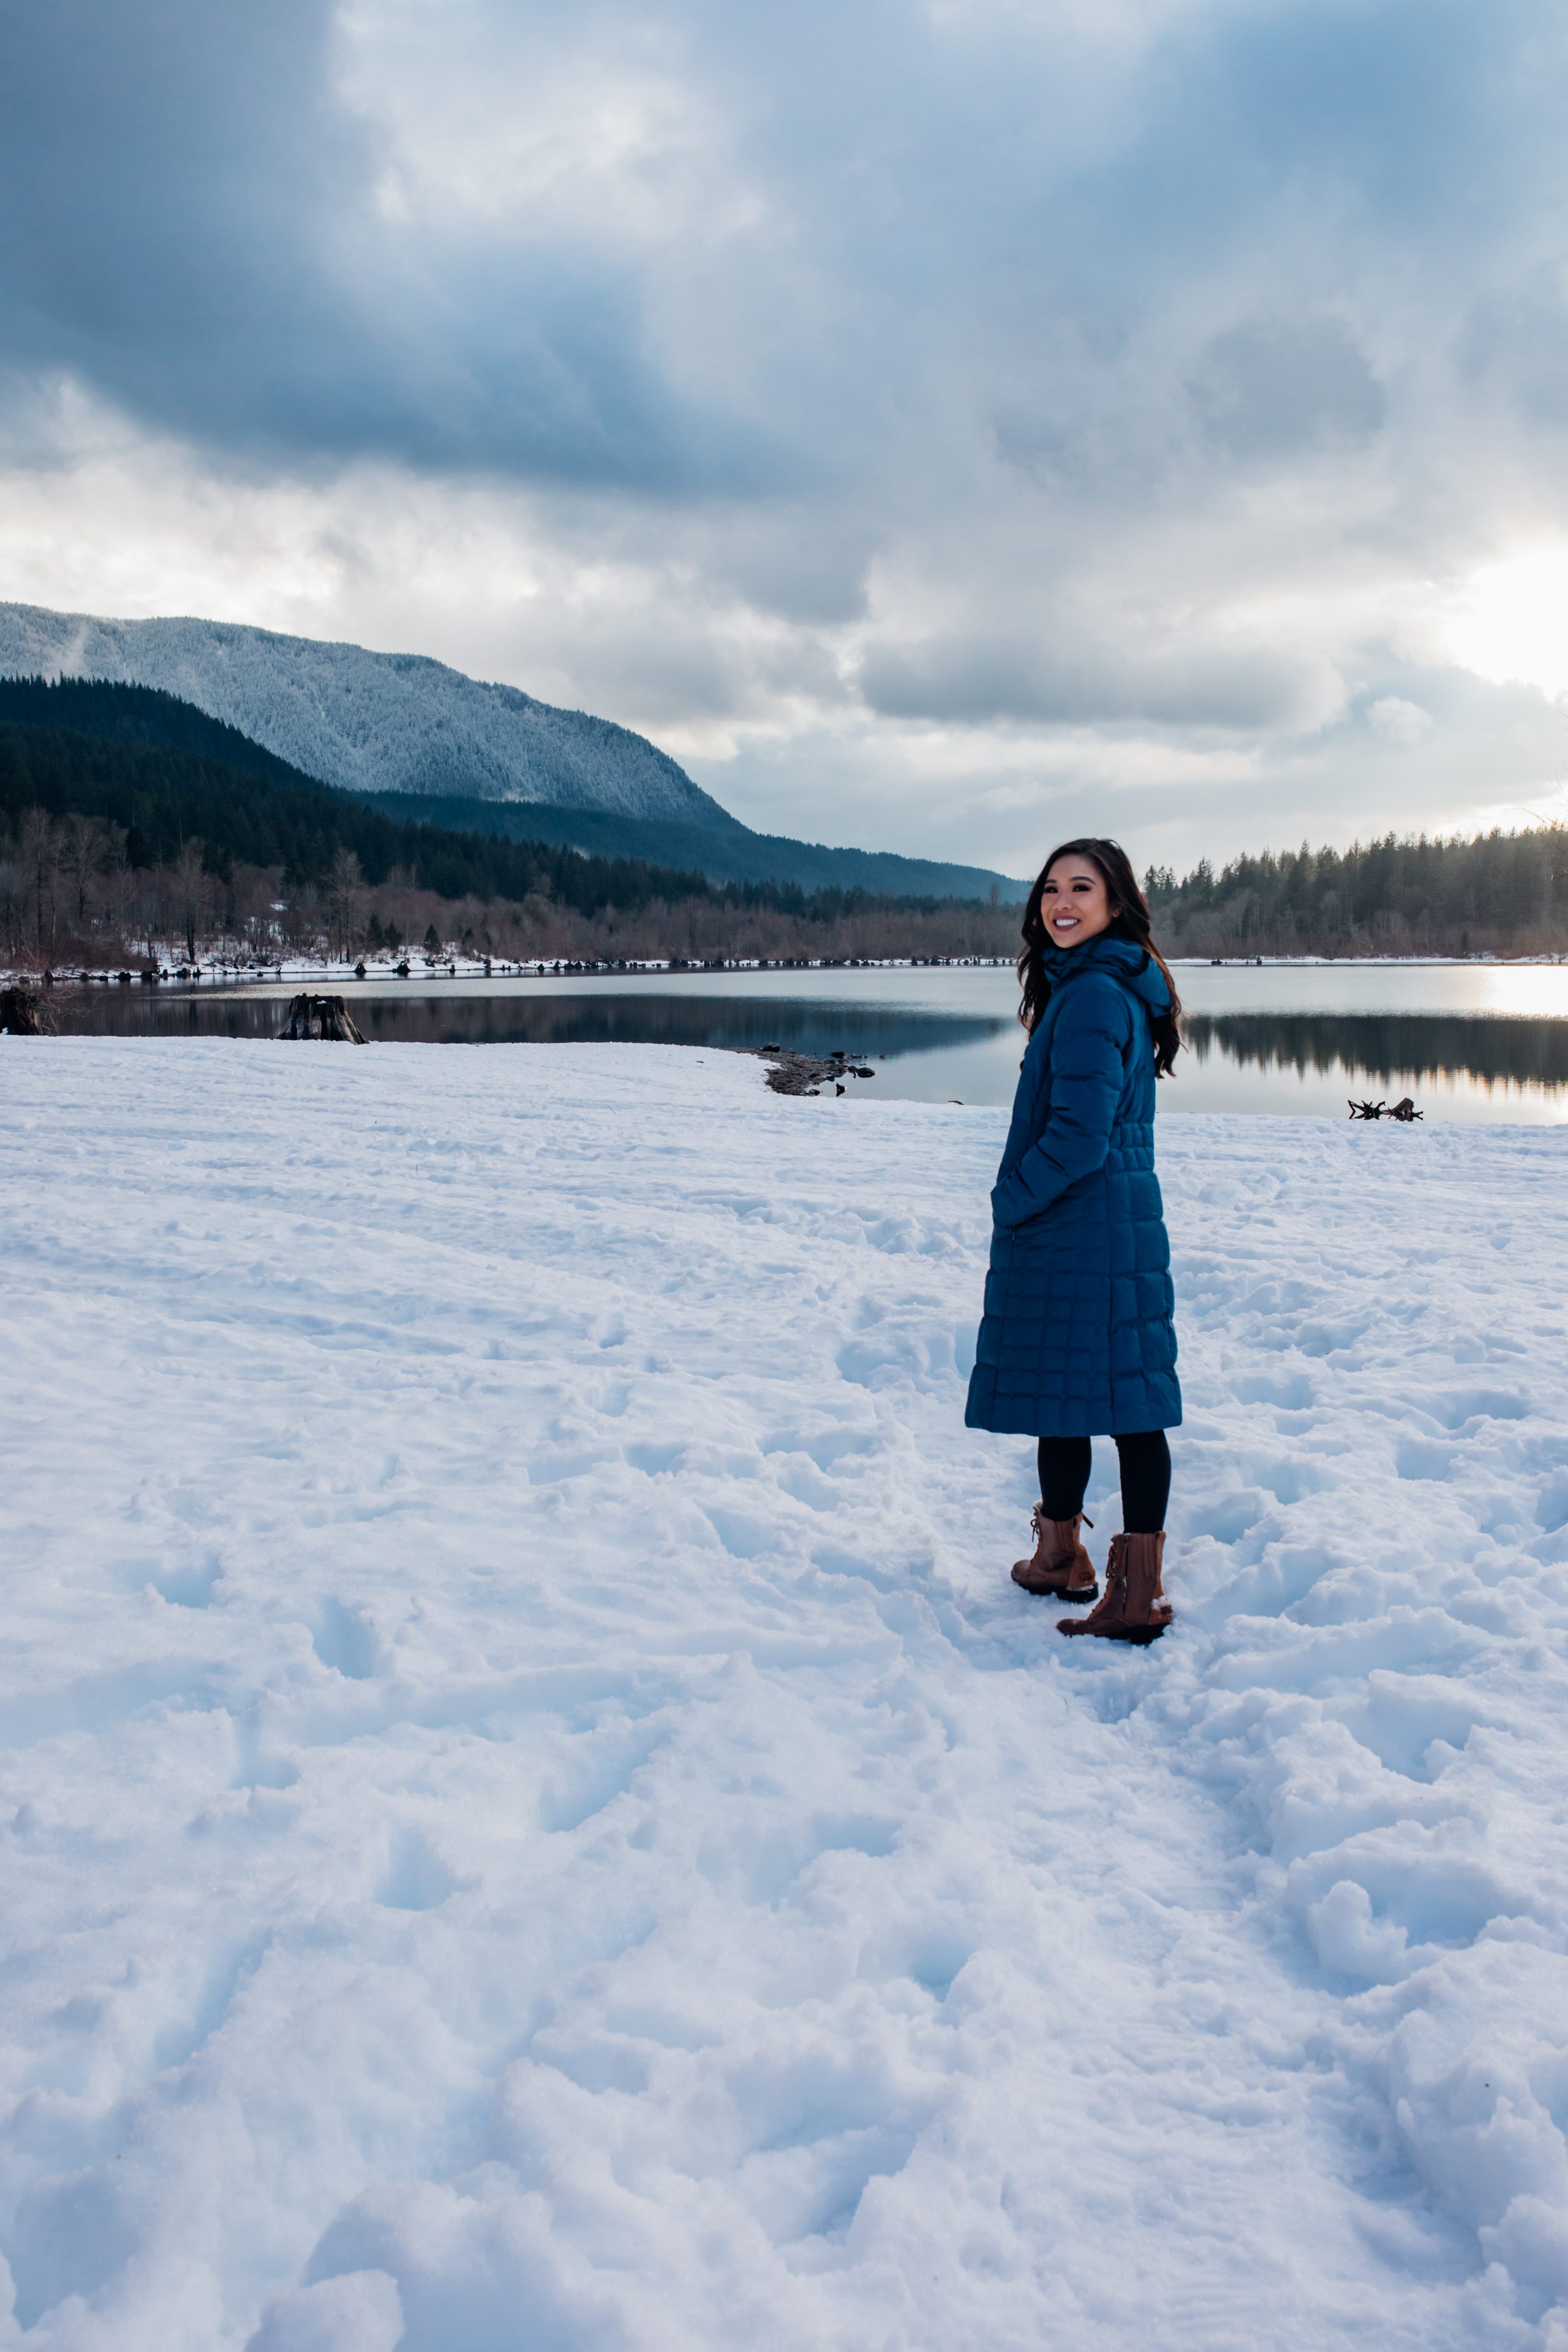 Hoang-Kim explores Rattlesnake Lake during winter wearing a blue Patagonia parka